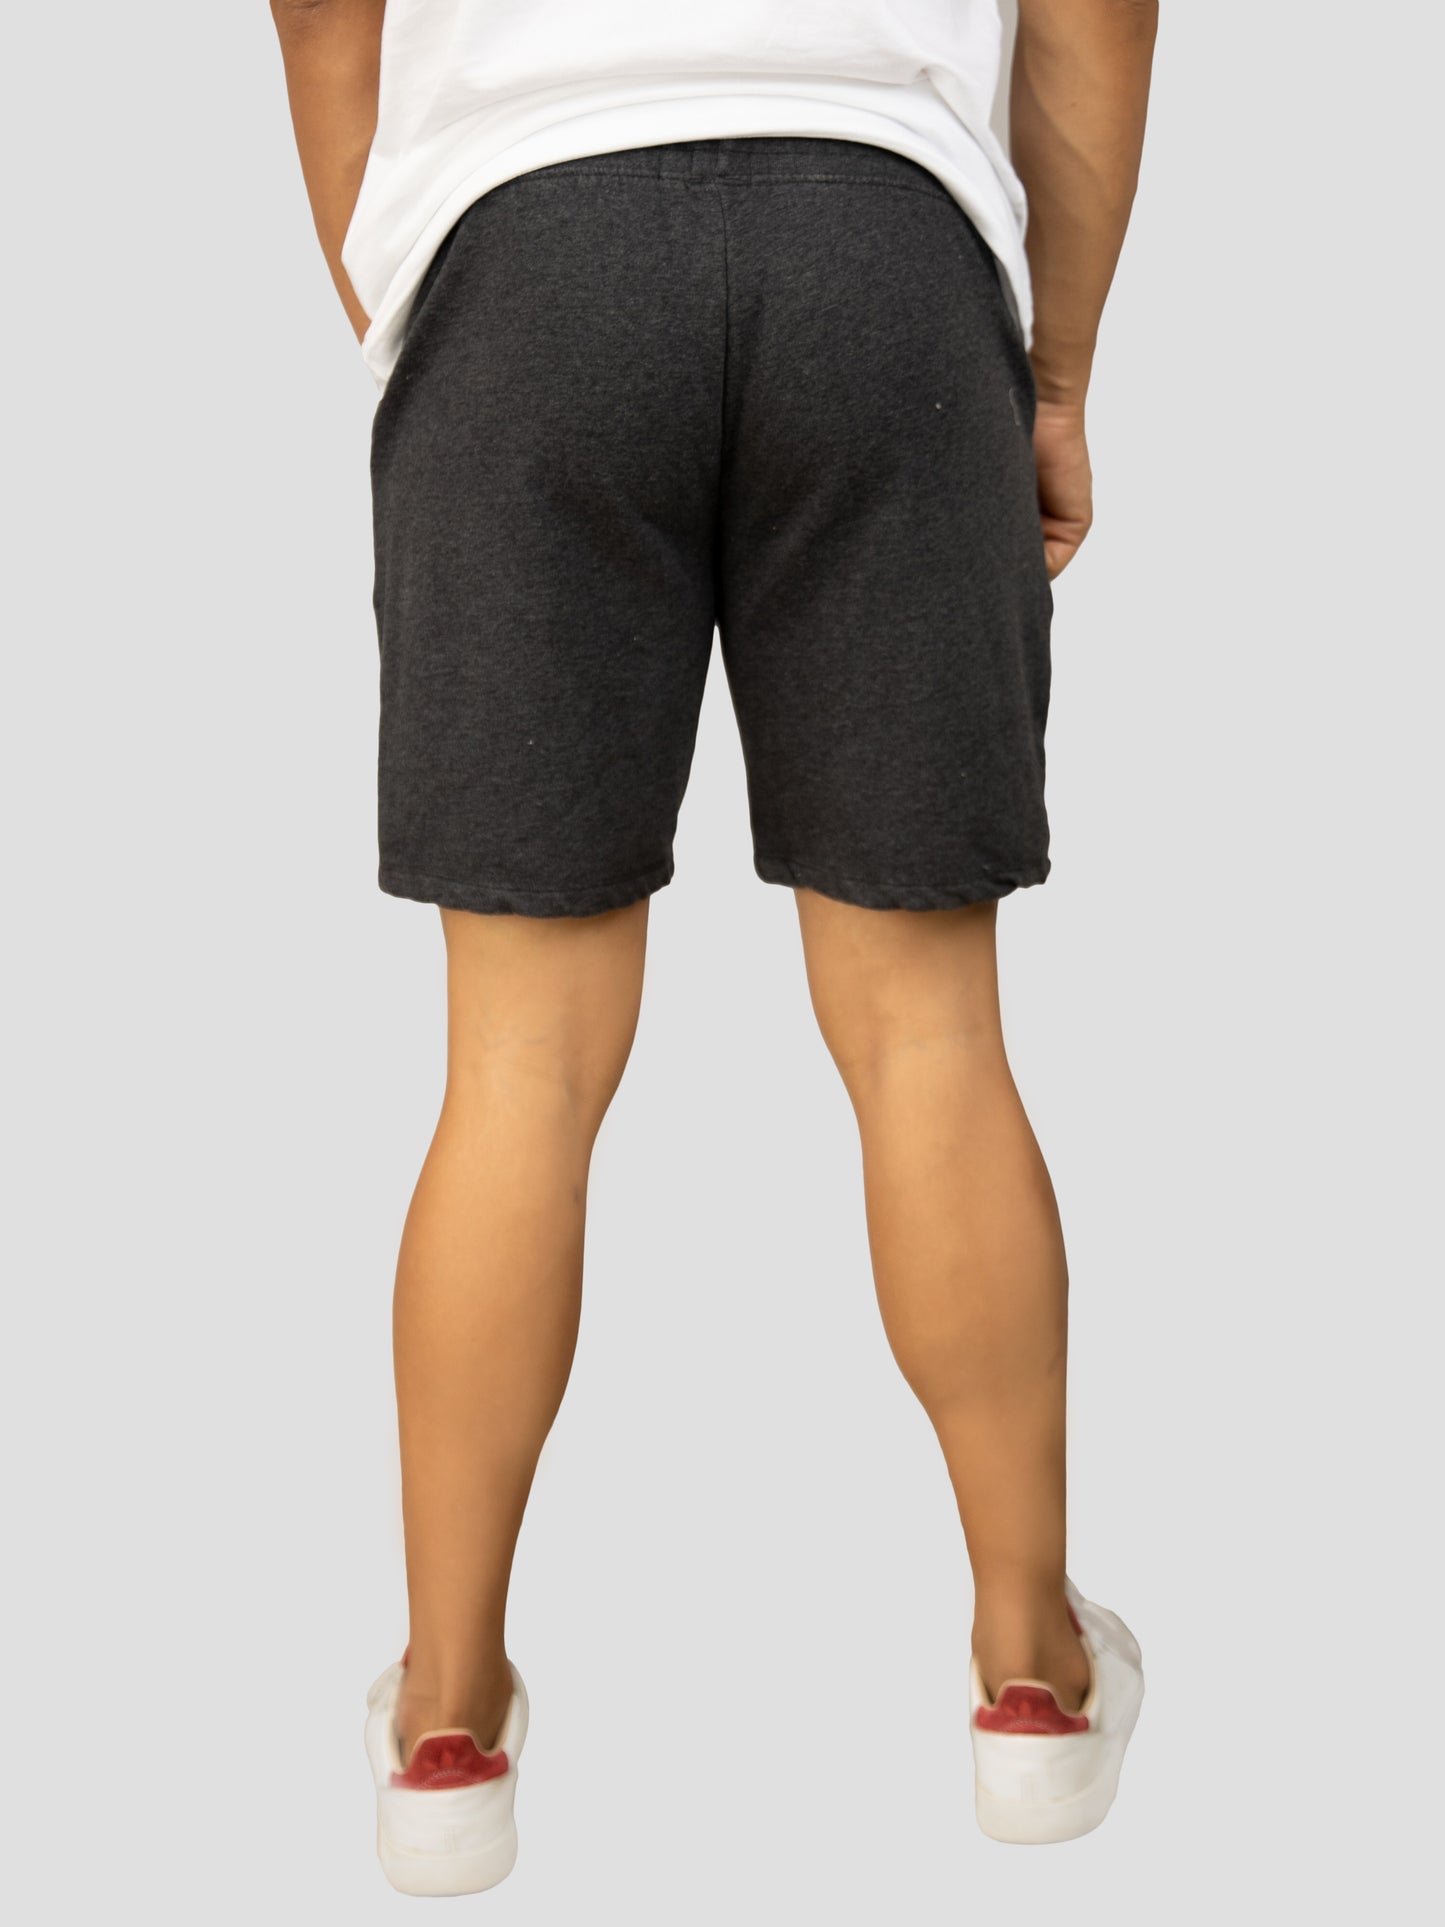 Dark Gray casual cotton fleece shorts for men